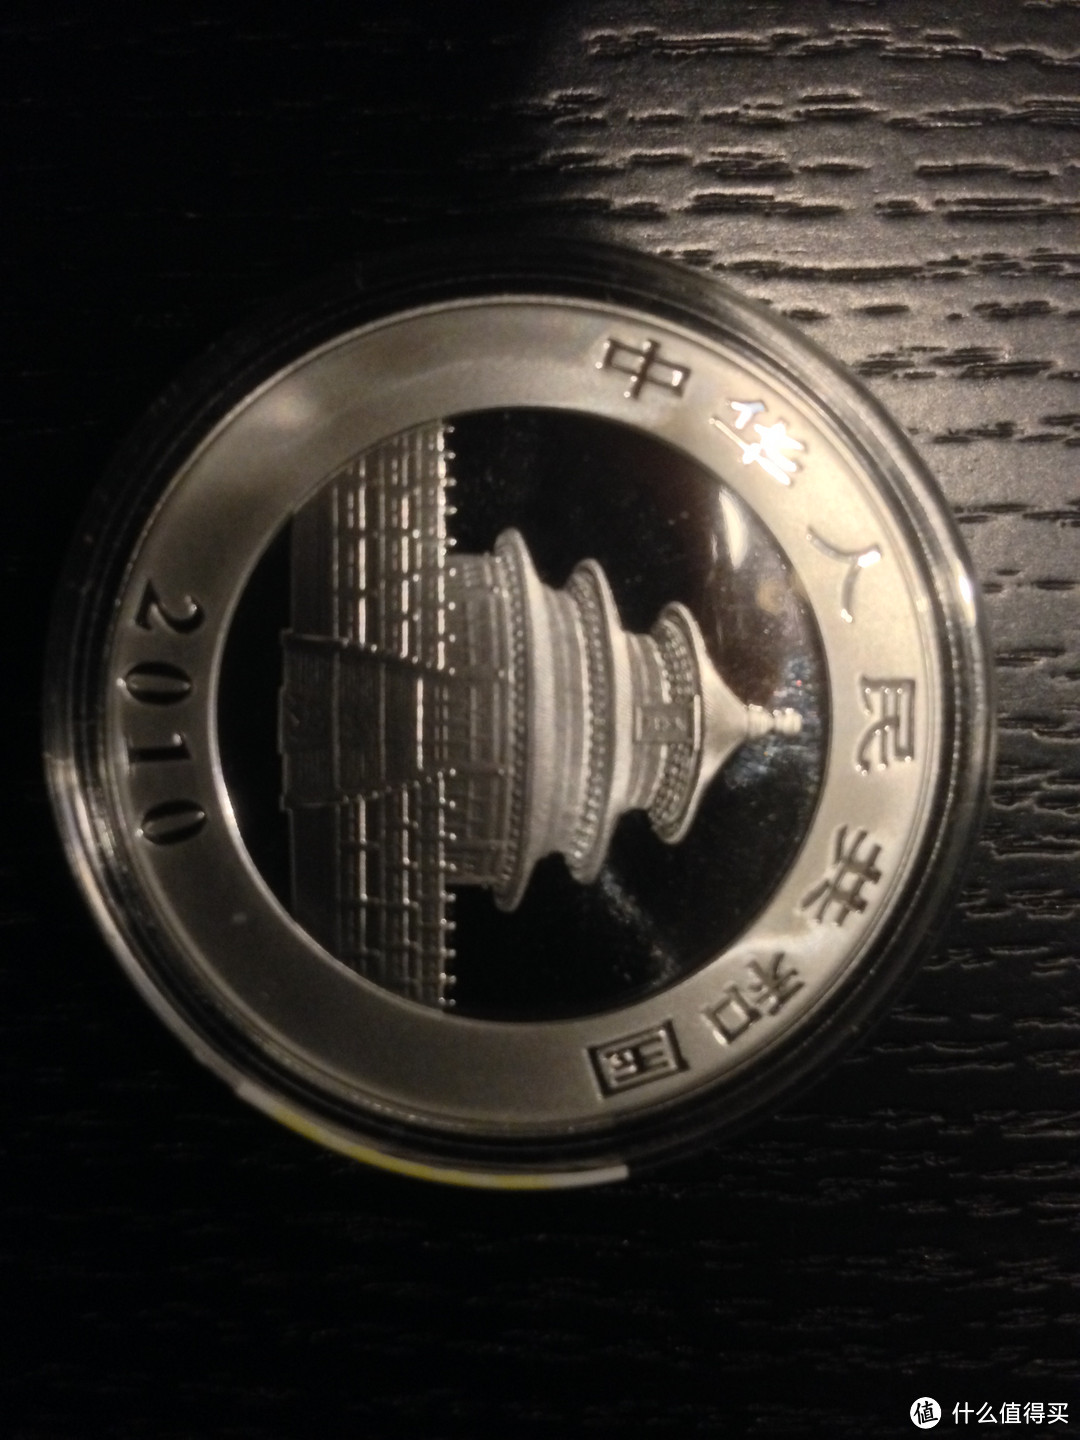 2010年版熊猫银币，本面一如既往是天坛的图案，正面是两只憨态可掬的大熊猫，可以看到镜面工艺非常漂亮。